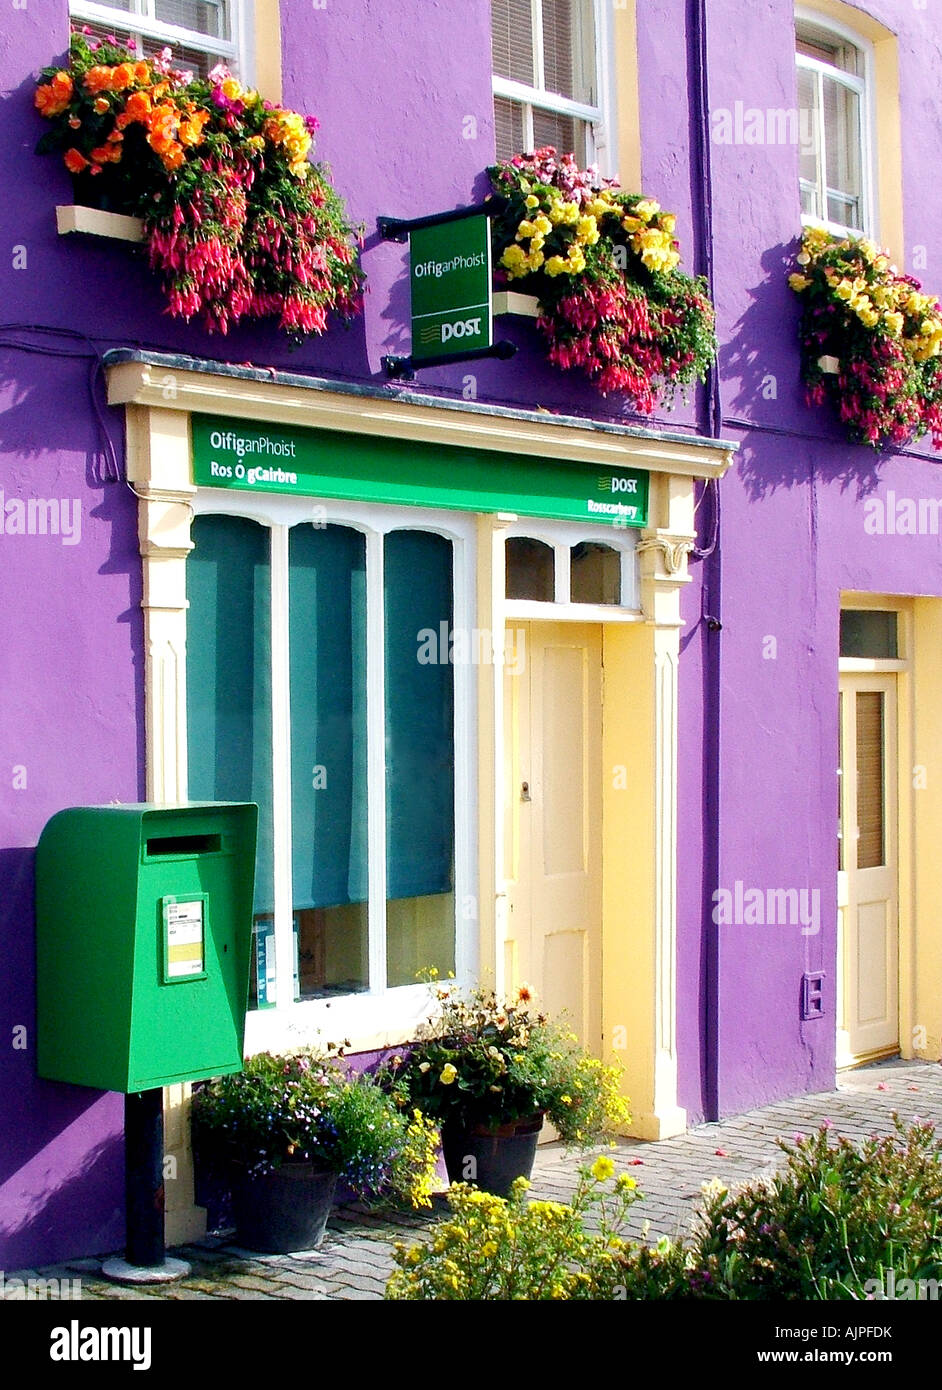 Irish Post Office Stock Photo